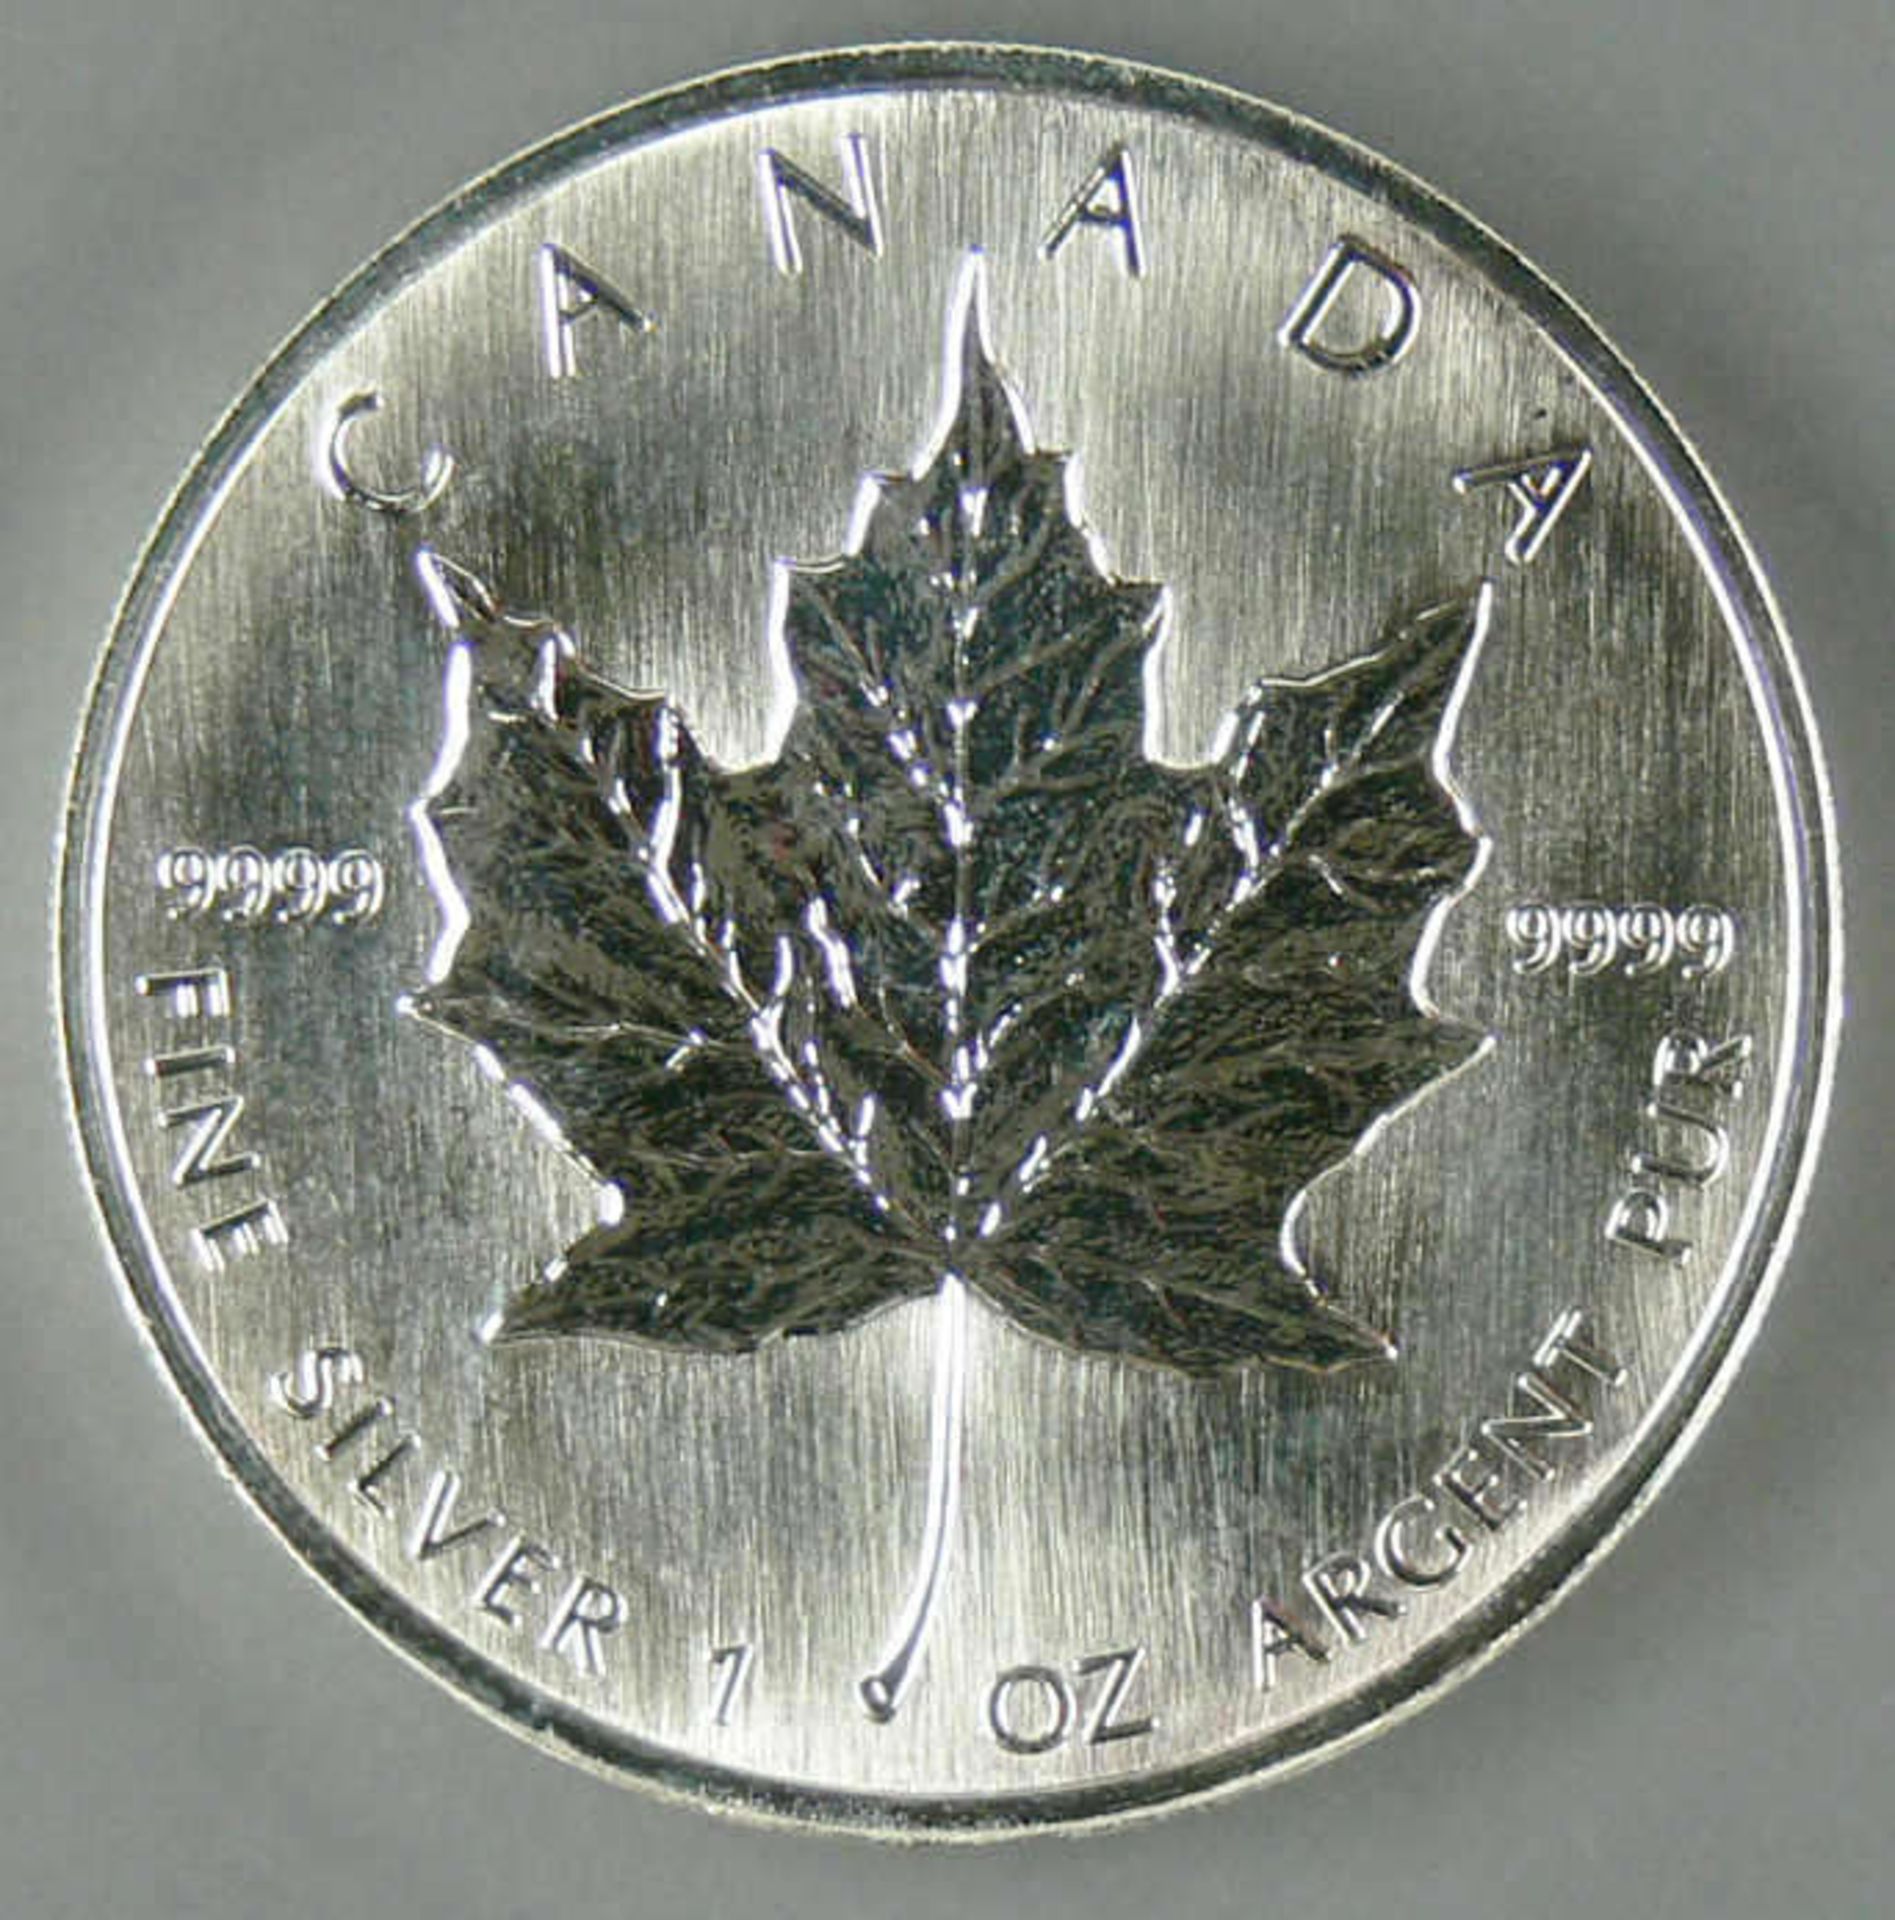 Kanada 1994, 5.- Dollar - Silbermünze "Maple Leaf". Silber 999, Gewicht: 1 oz. Mit Zertifikat.